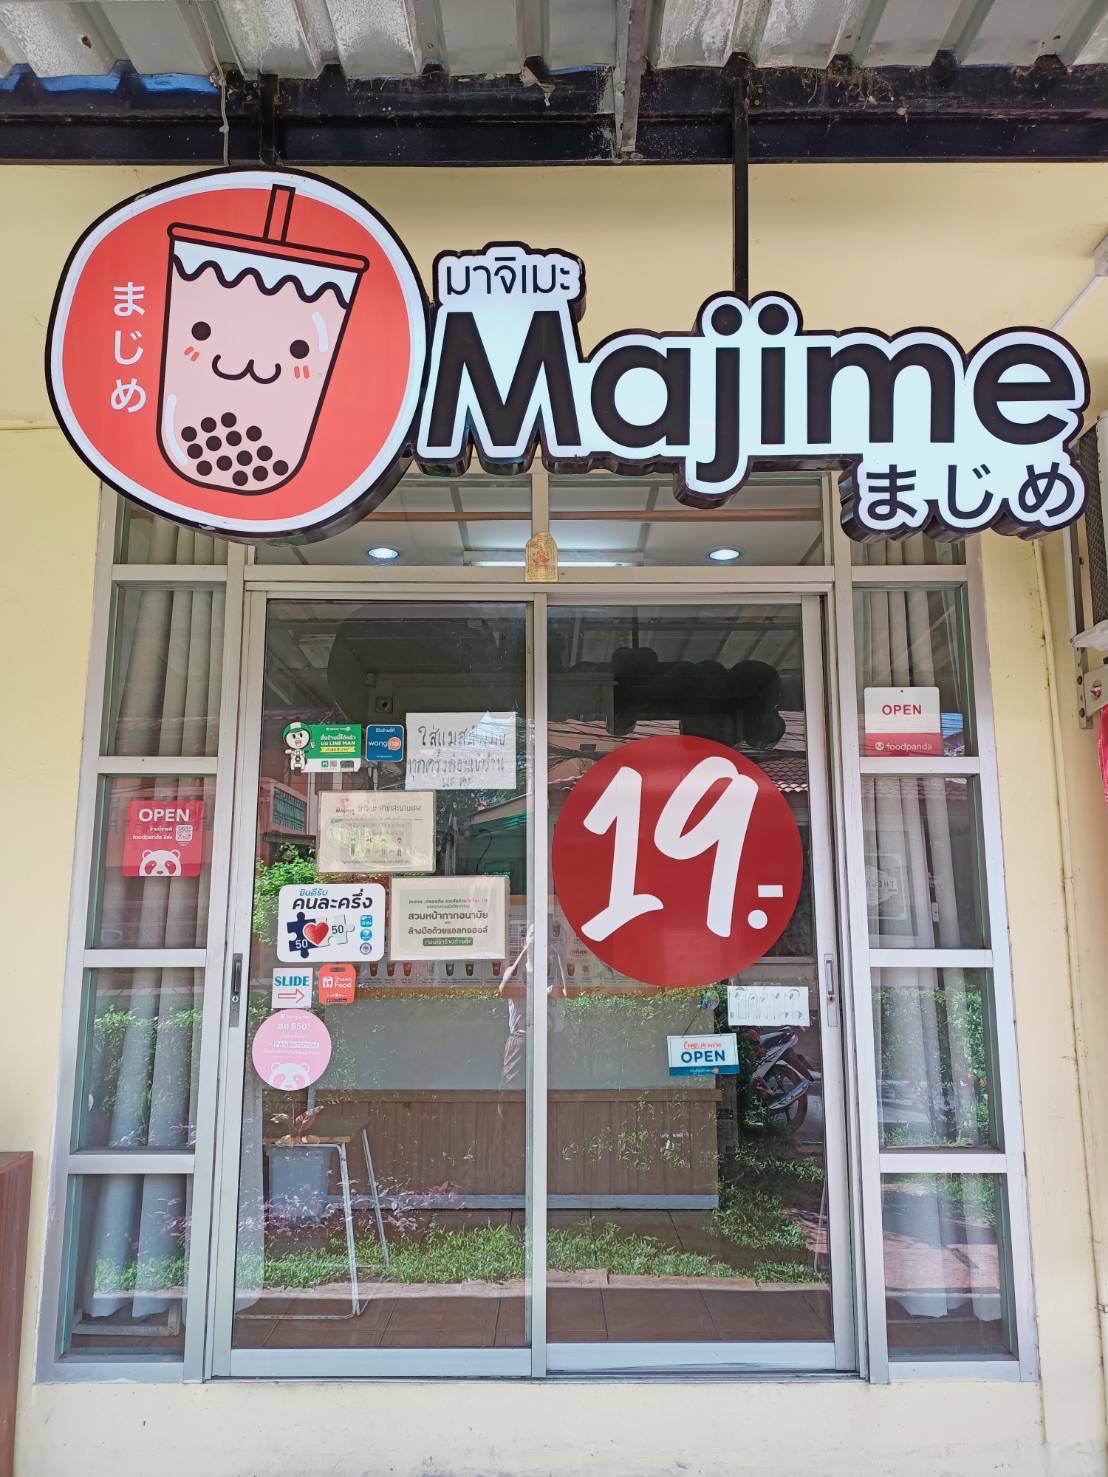 เซ้งร้าน ชานมไข่มุก Majime สาขาสะพานแดง รังสิต ด่วนราคาพิเศษ